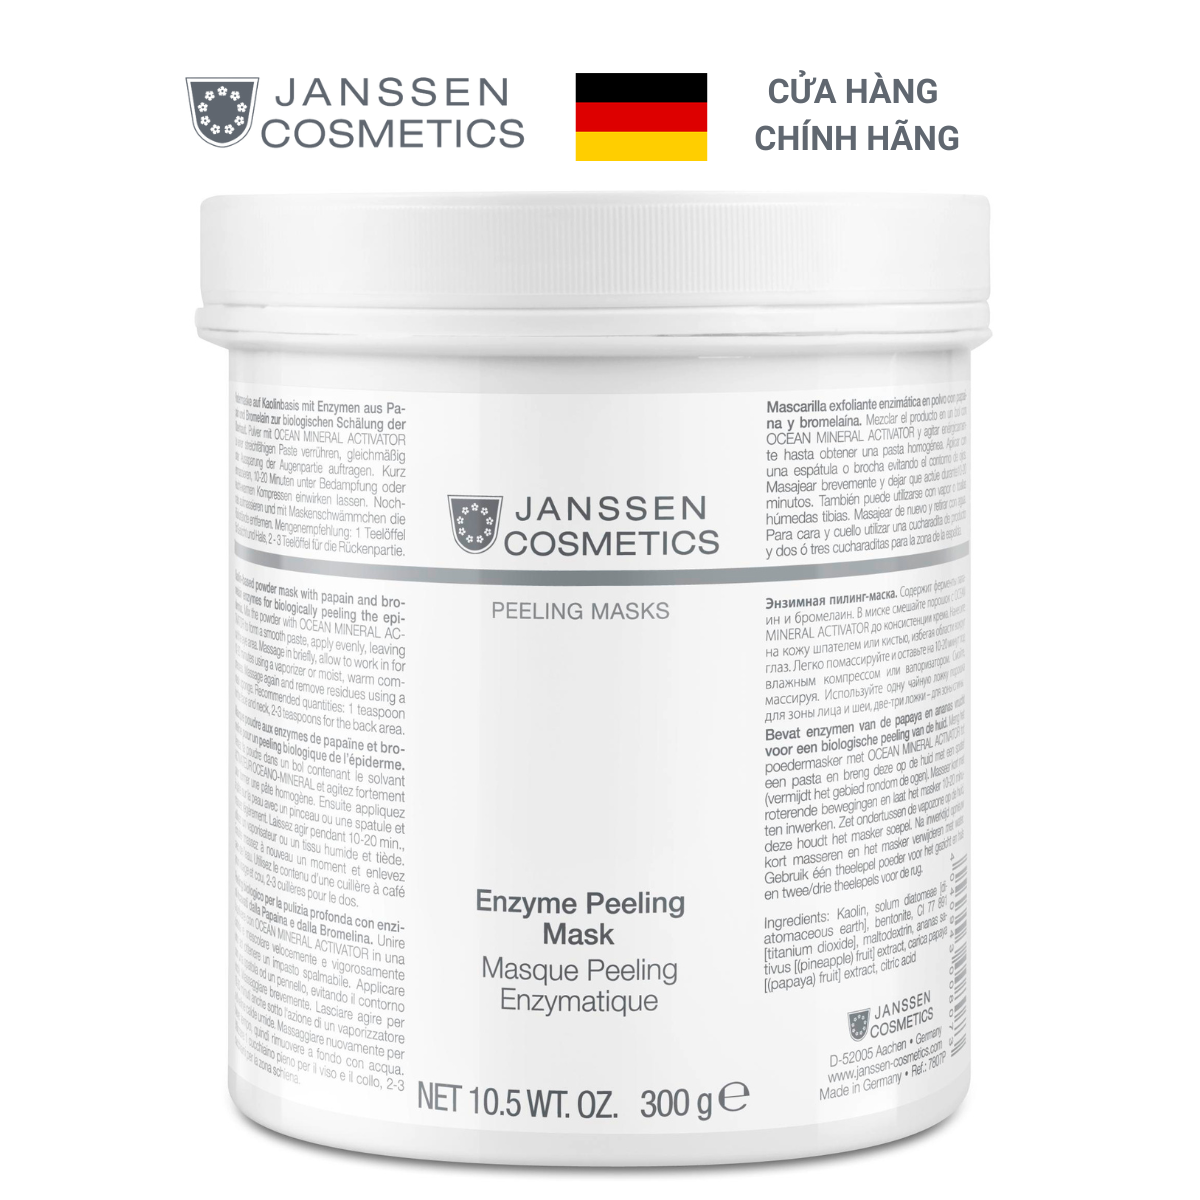 Mặt nạ tẩy tế bào chết bằng enzyme Janssen Cosmetics Enzyme Peeling Mask 300g